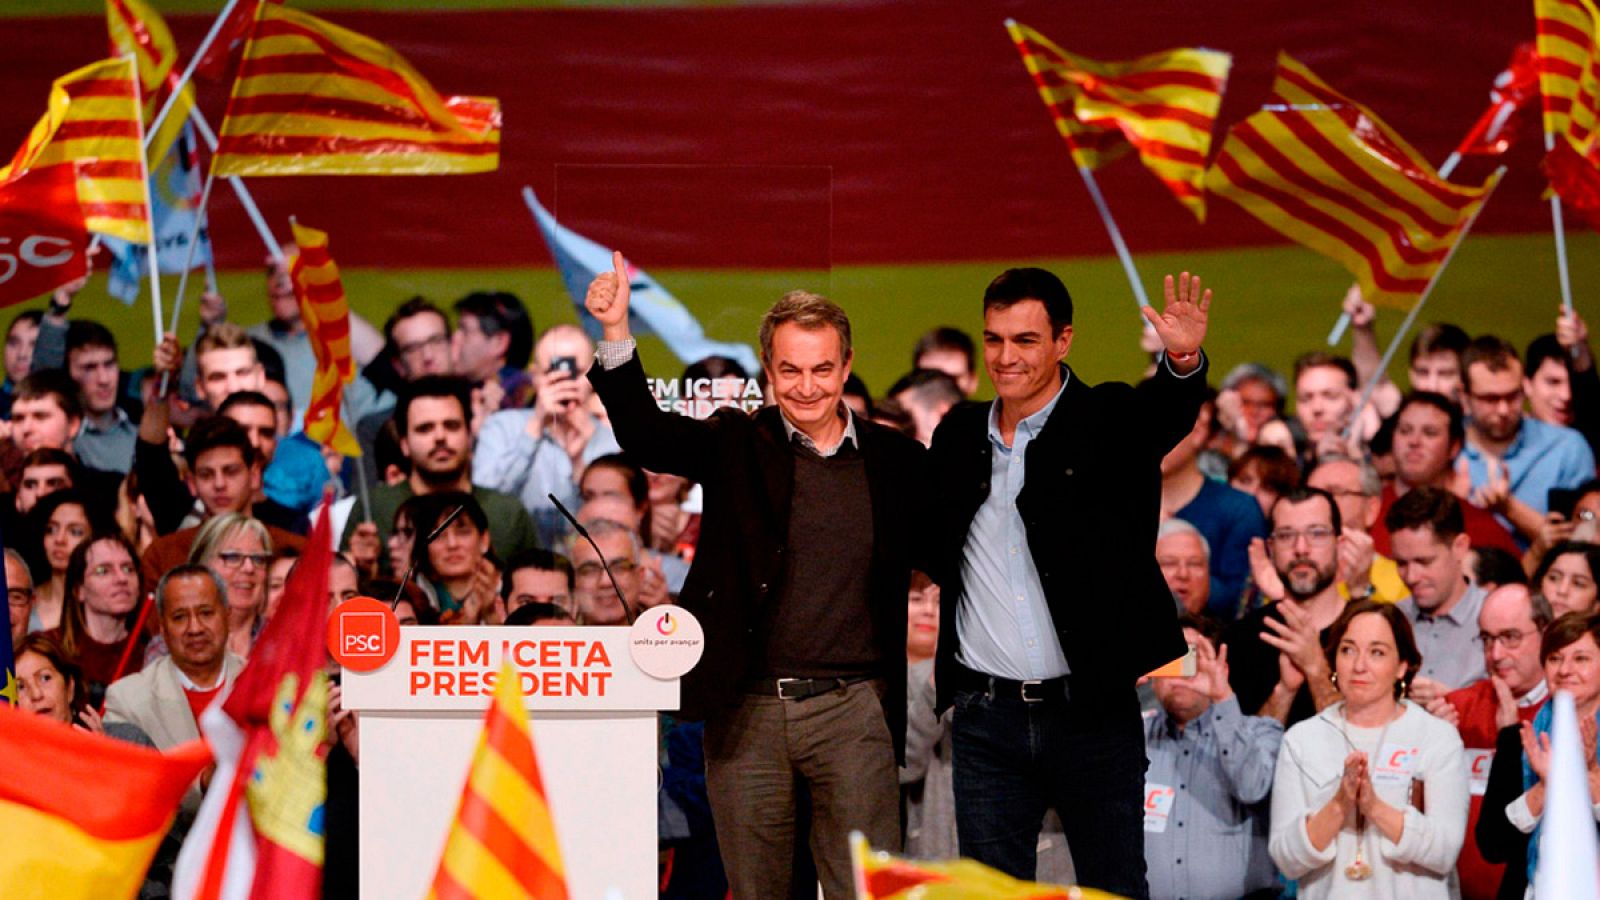 Elecciones catalanas: Zapatero y Sánchez impulsan a Iceta como presidente para "un cambio que una"